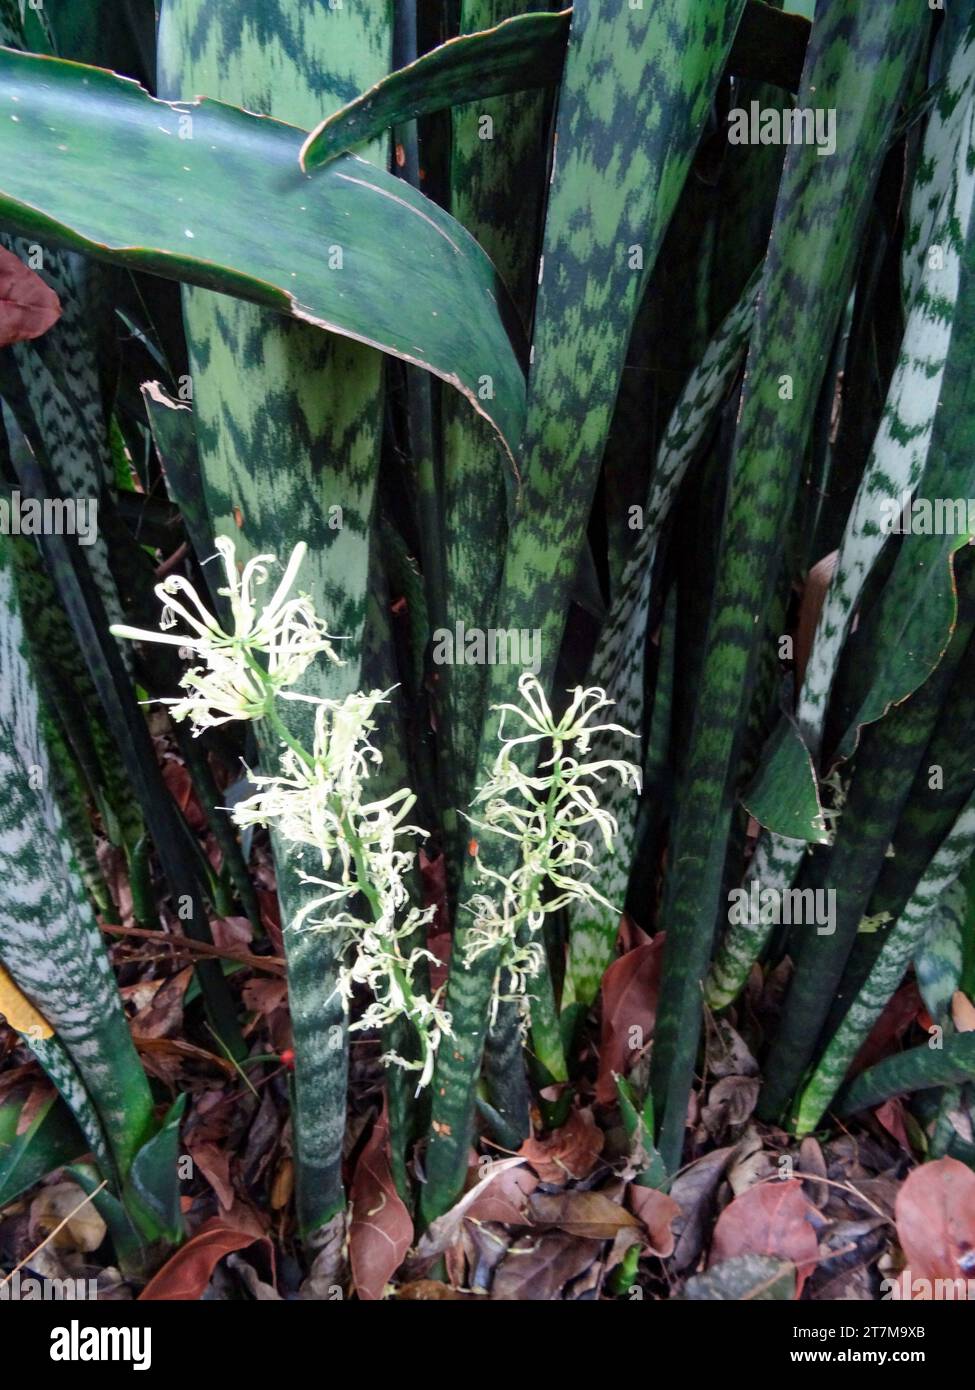 Retrato natural de la planta con flores de primer plano de la lengua de la suegra, Sansevieria trifasciata. Alta resolución con un poco de espacio negativo Foto de stock